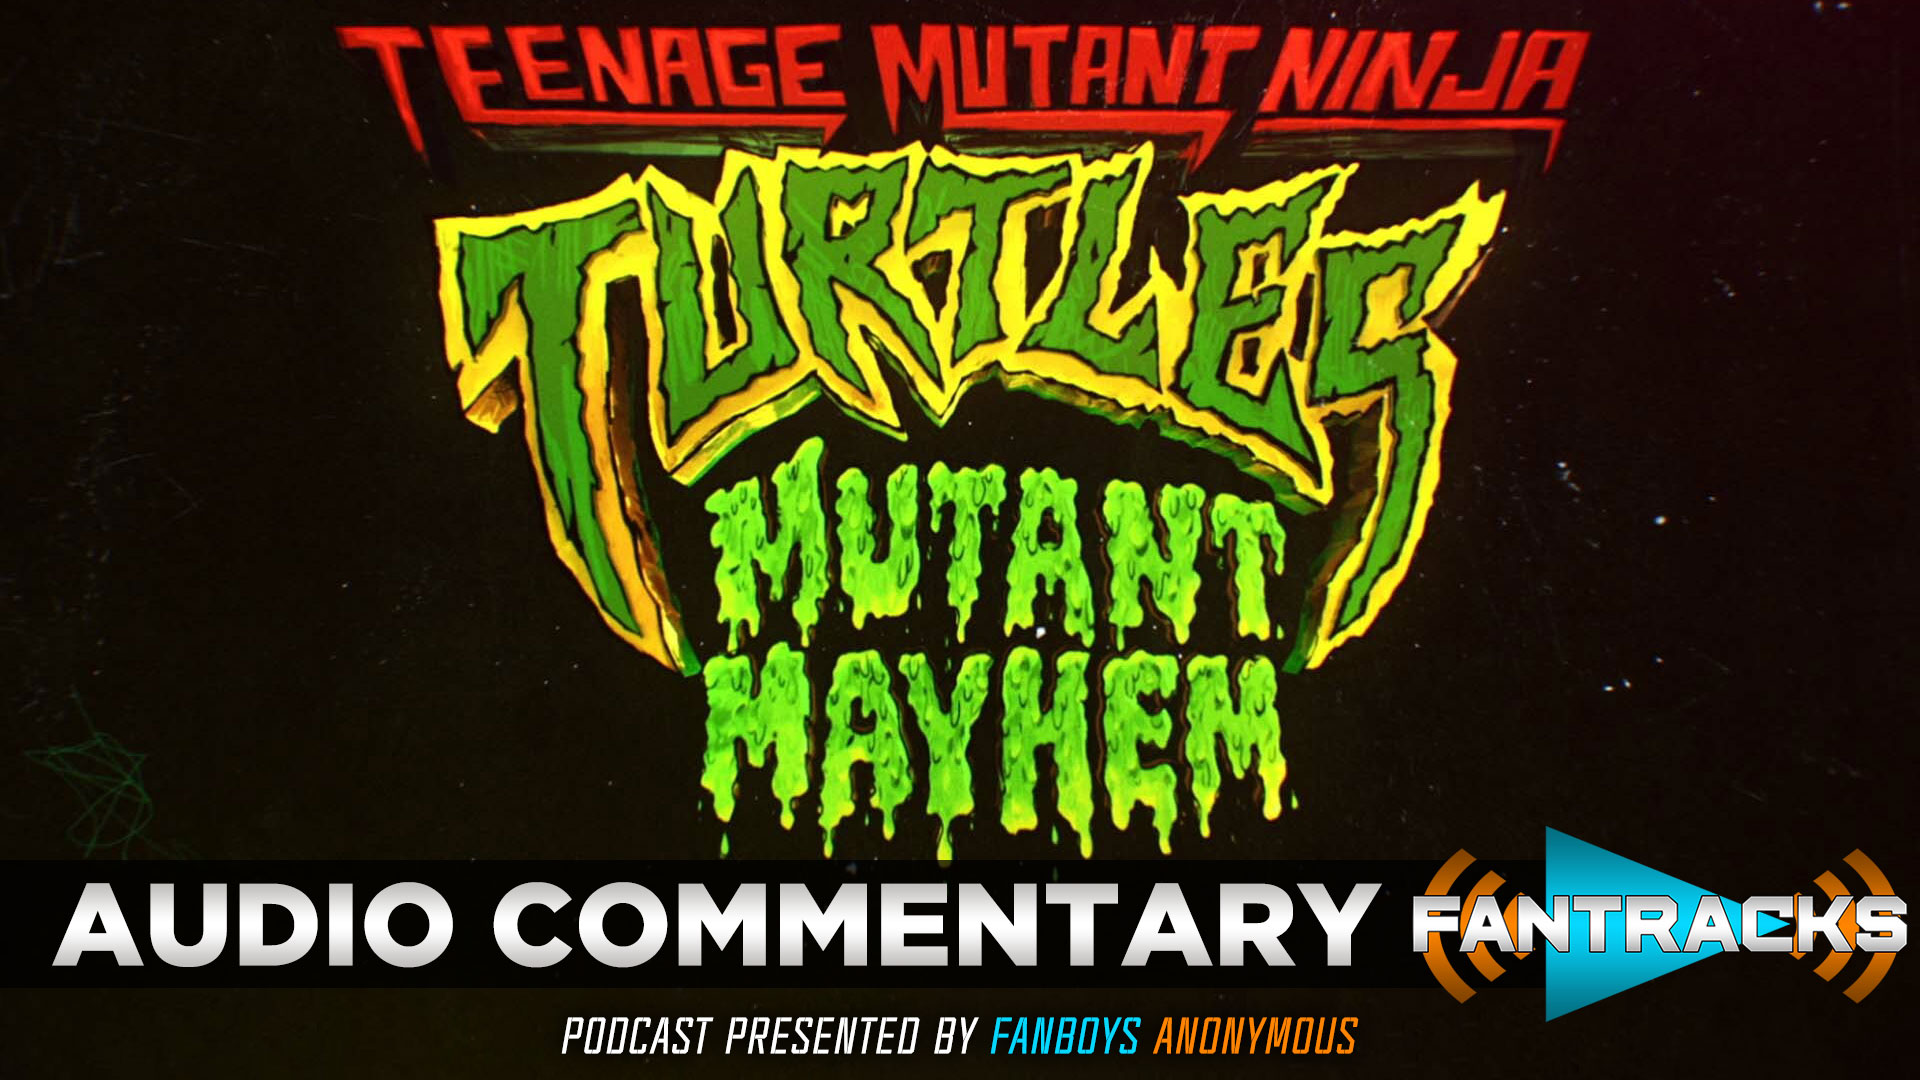 FanTracks Teenage Mutant Ninja Turtles: Mutant Mayhem audio commentary